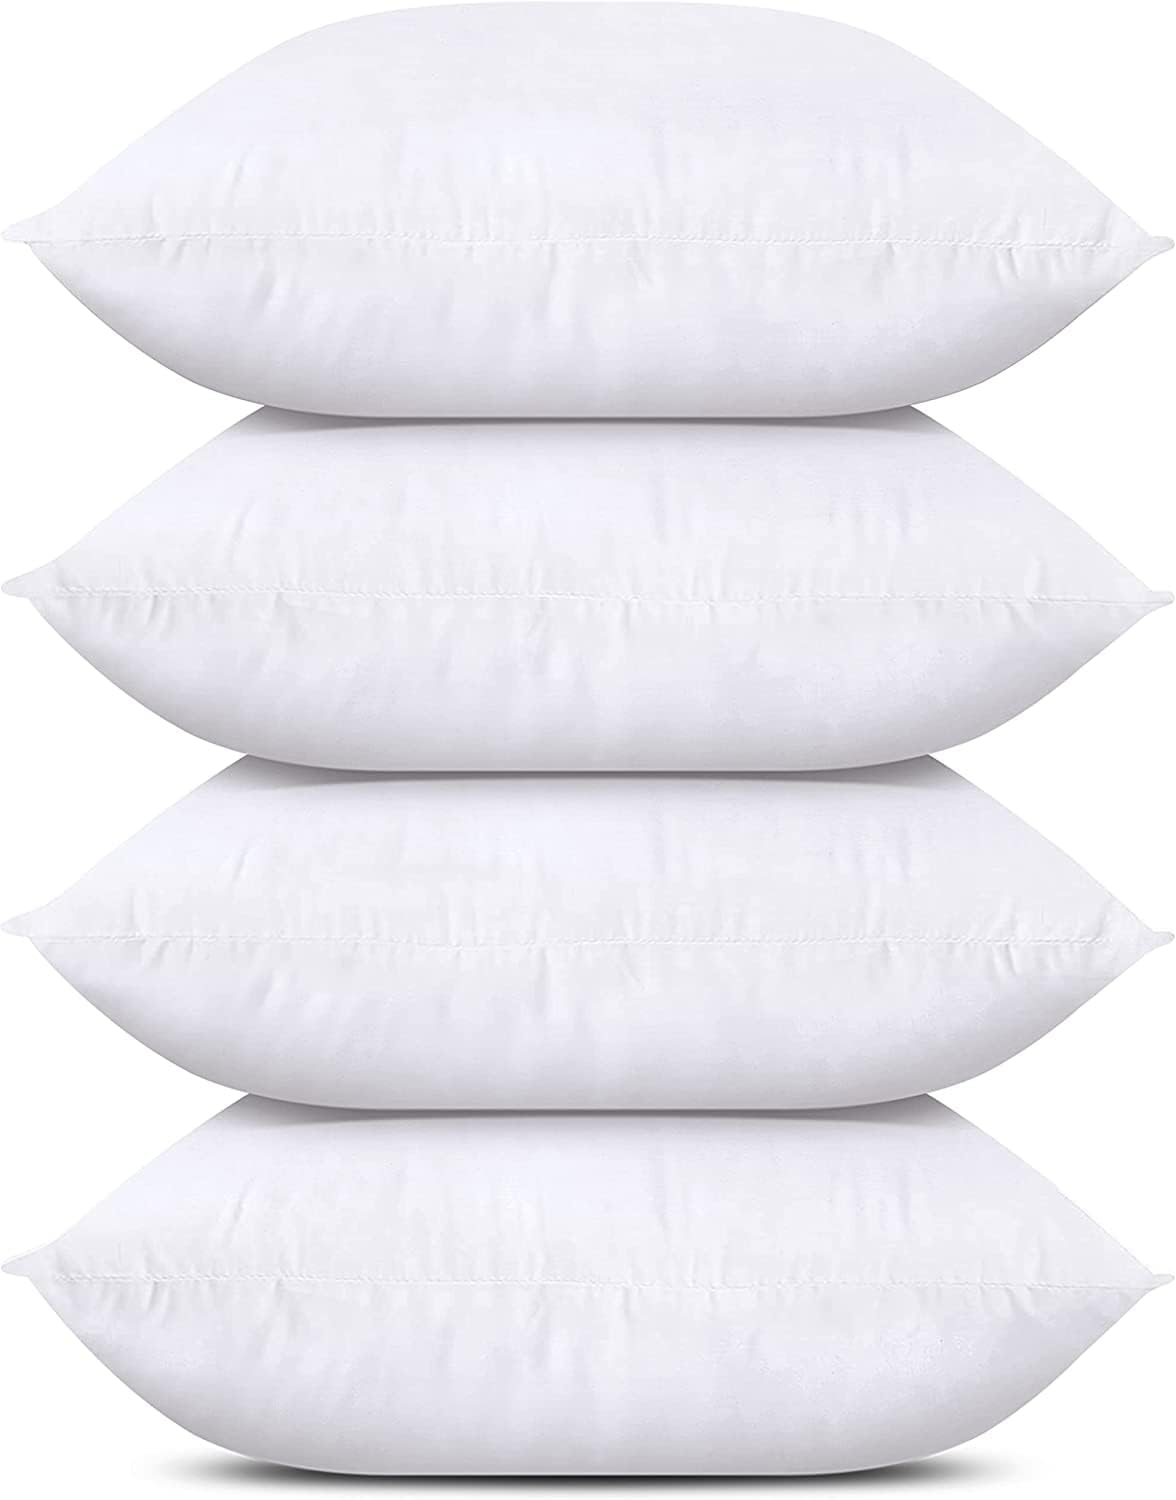 Utopia Bedding Throw Pillows (Set of 4, White), 18 x 18 Inches Pillows for  Sofa